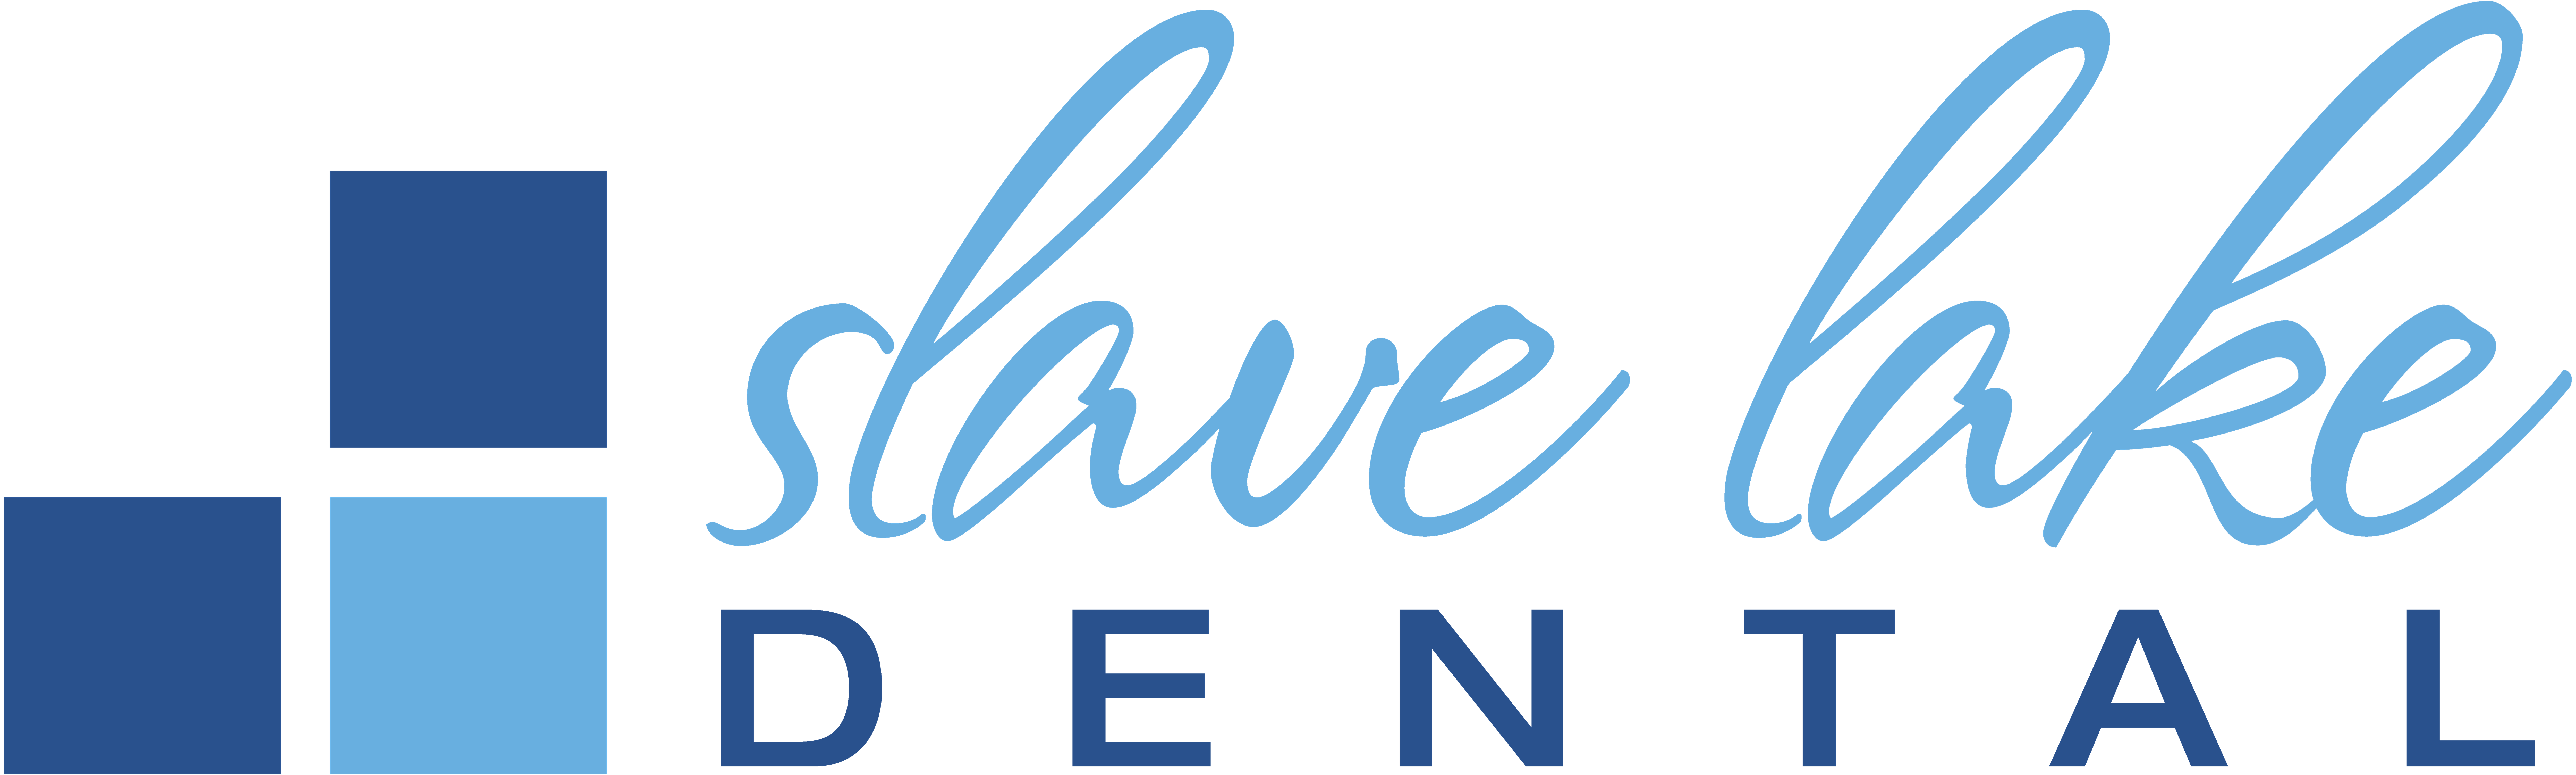 Slave Lake Dental - Logo